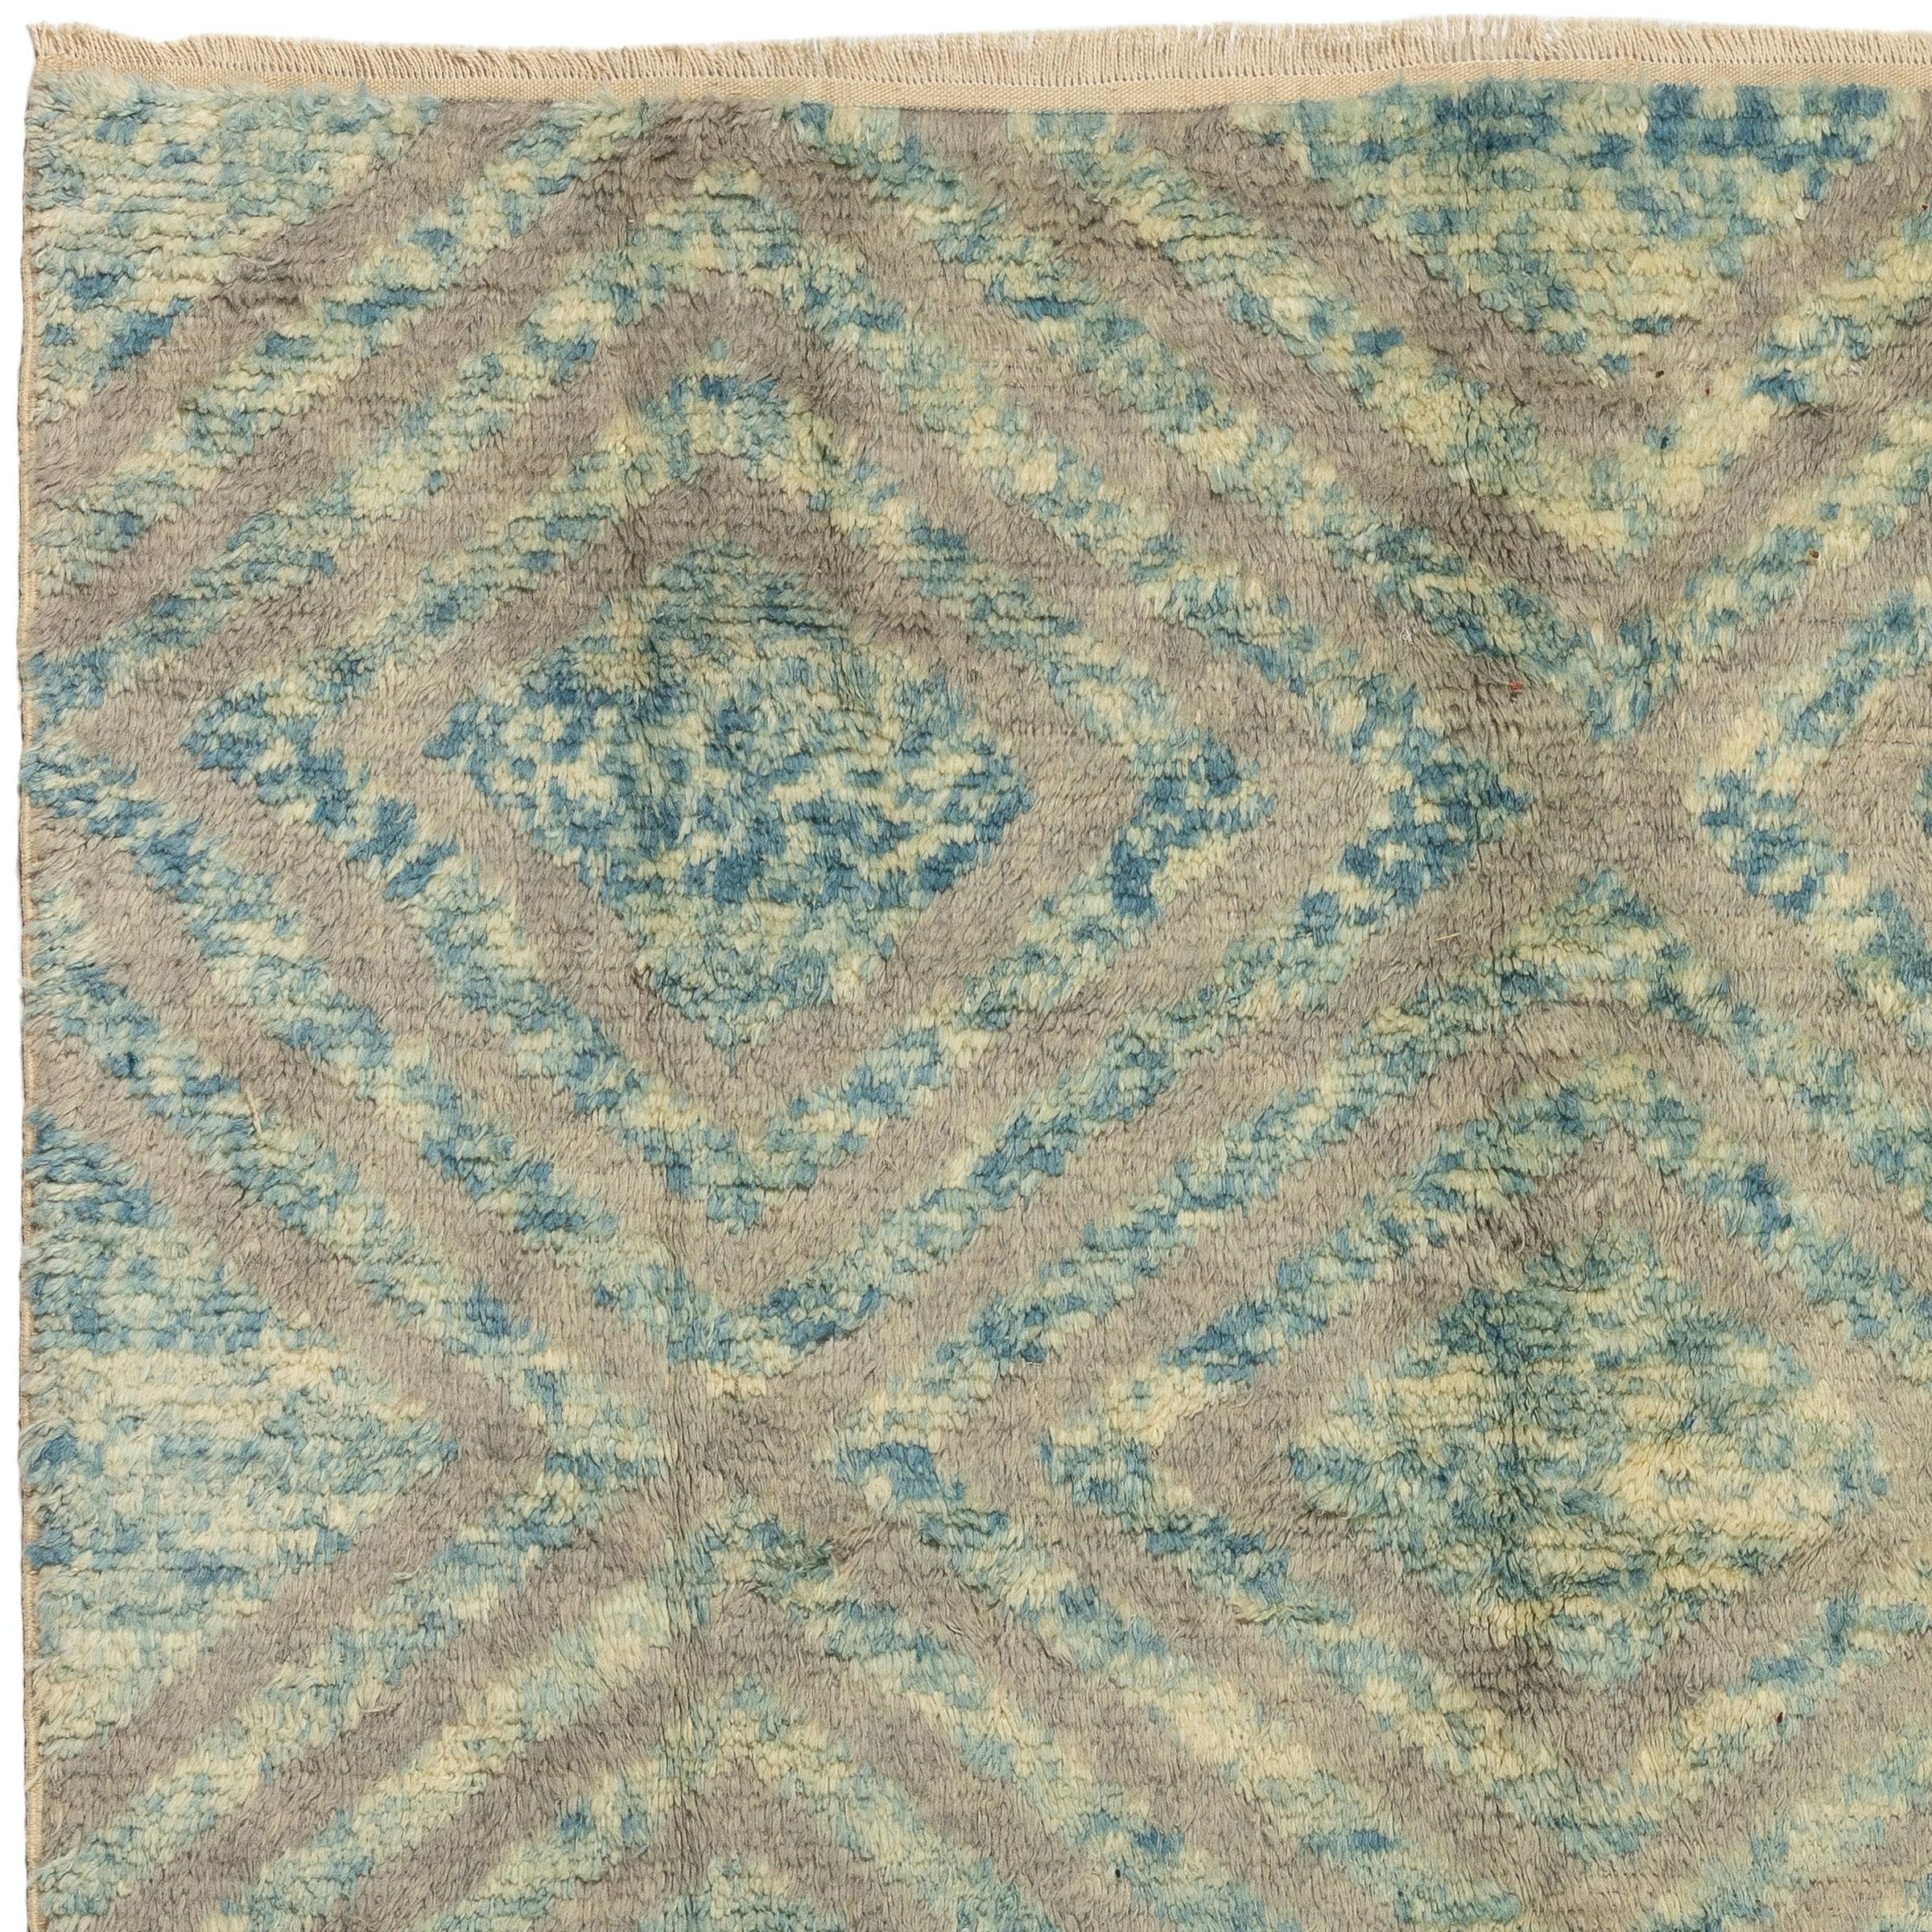 Größe: 7.7 x 10.2 Ft

Ein moderner, handgeknüpfter Teppich im marokkanischen Stil aus 100% pflanzengefärbter, weicher, glänzender Lammwolle in den Farben Blau, Beige und Grau. Der weiche, bequeme, mittelhohe Flor ist ideal für Familien mit Kindern